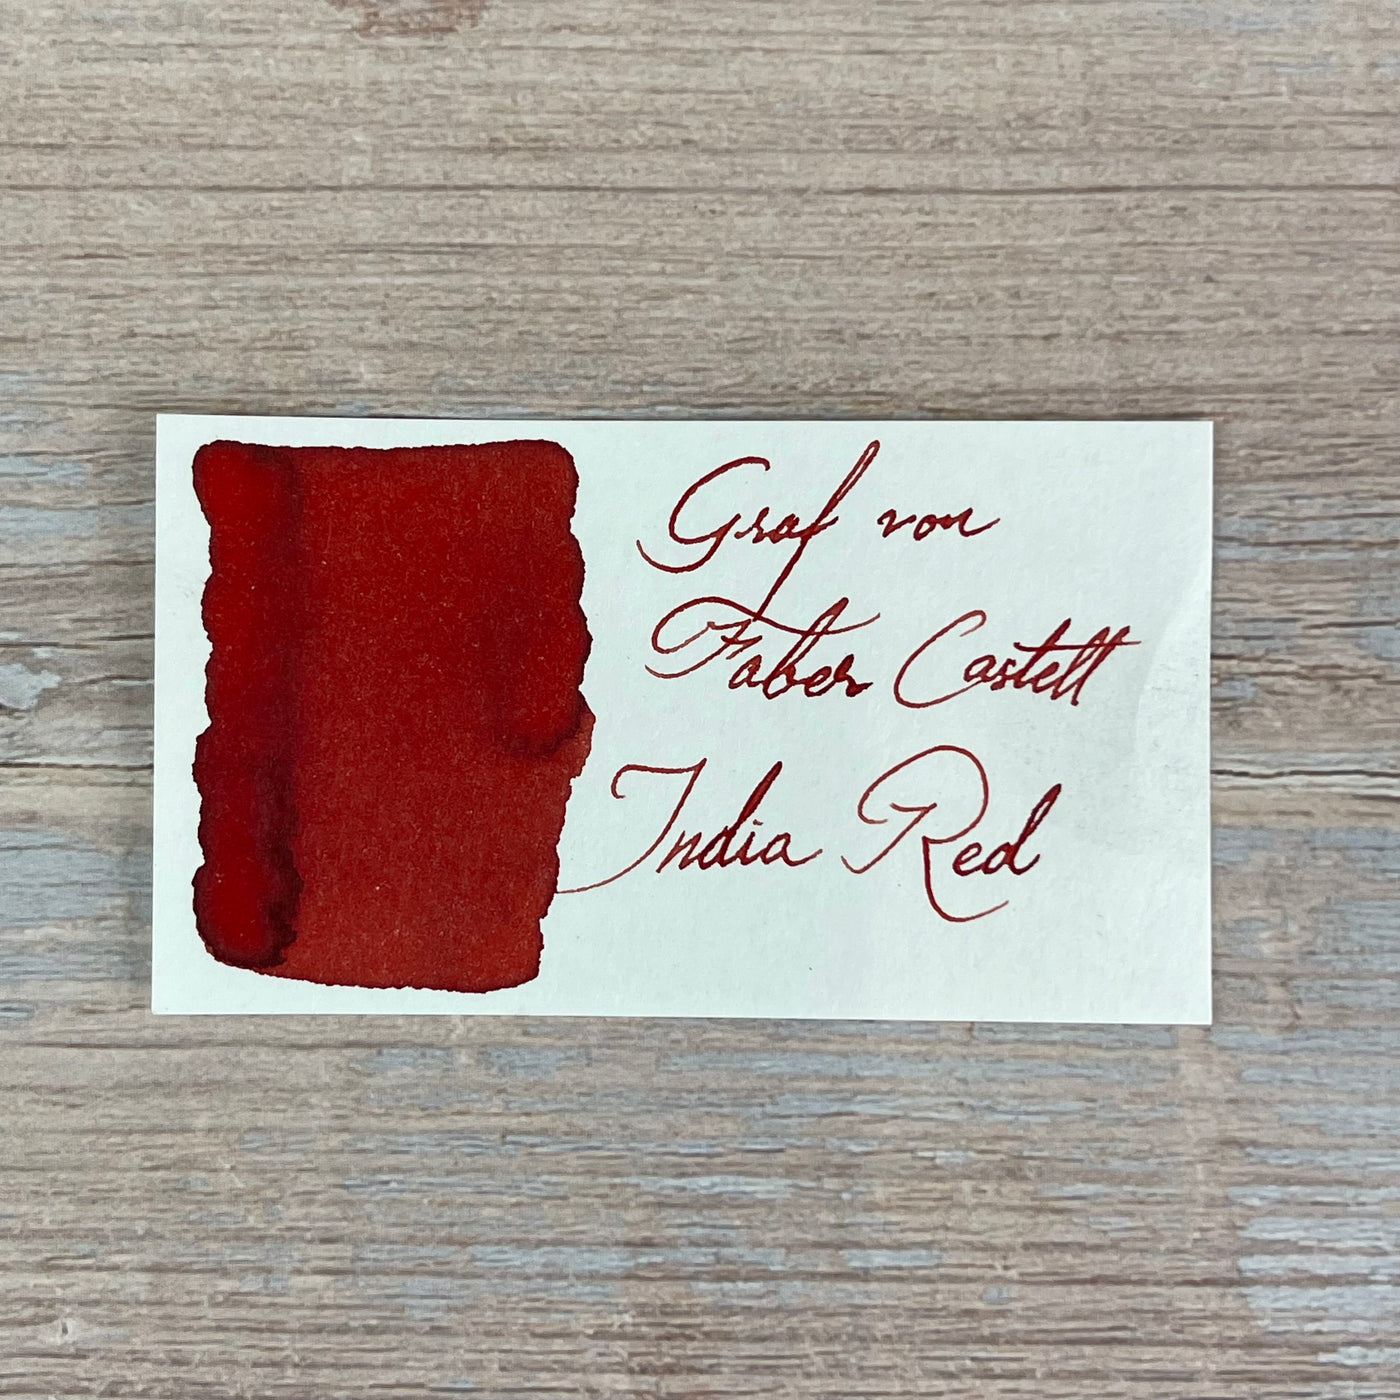 Graf von Faber-Castell India Red - 75ml Bottled Ink